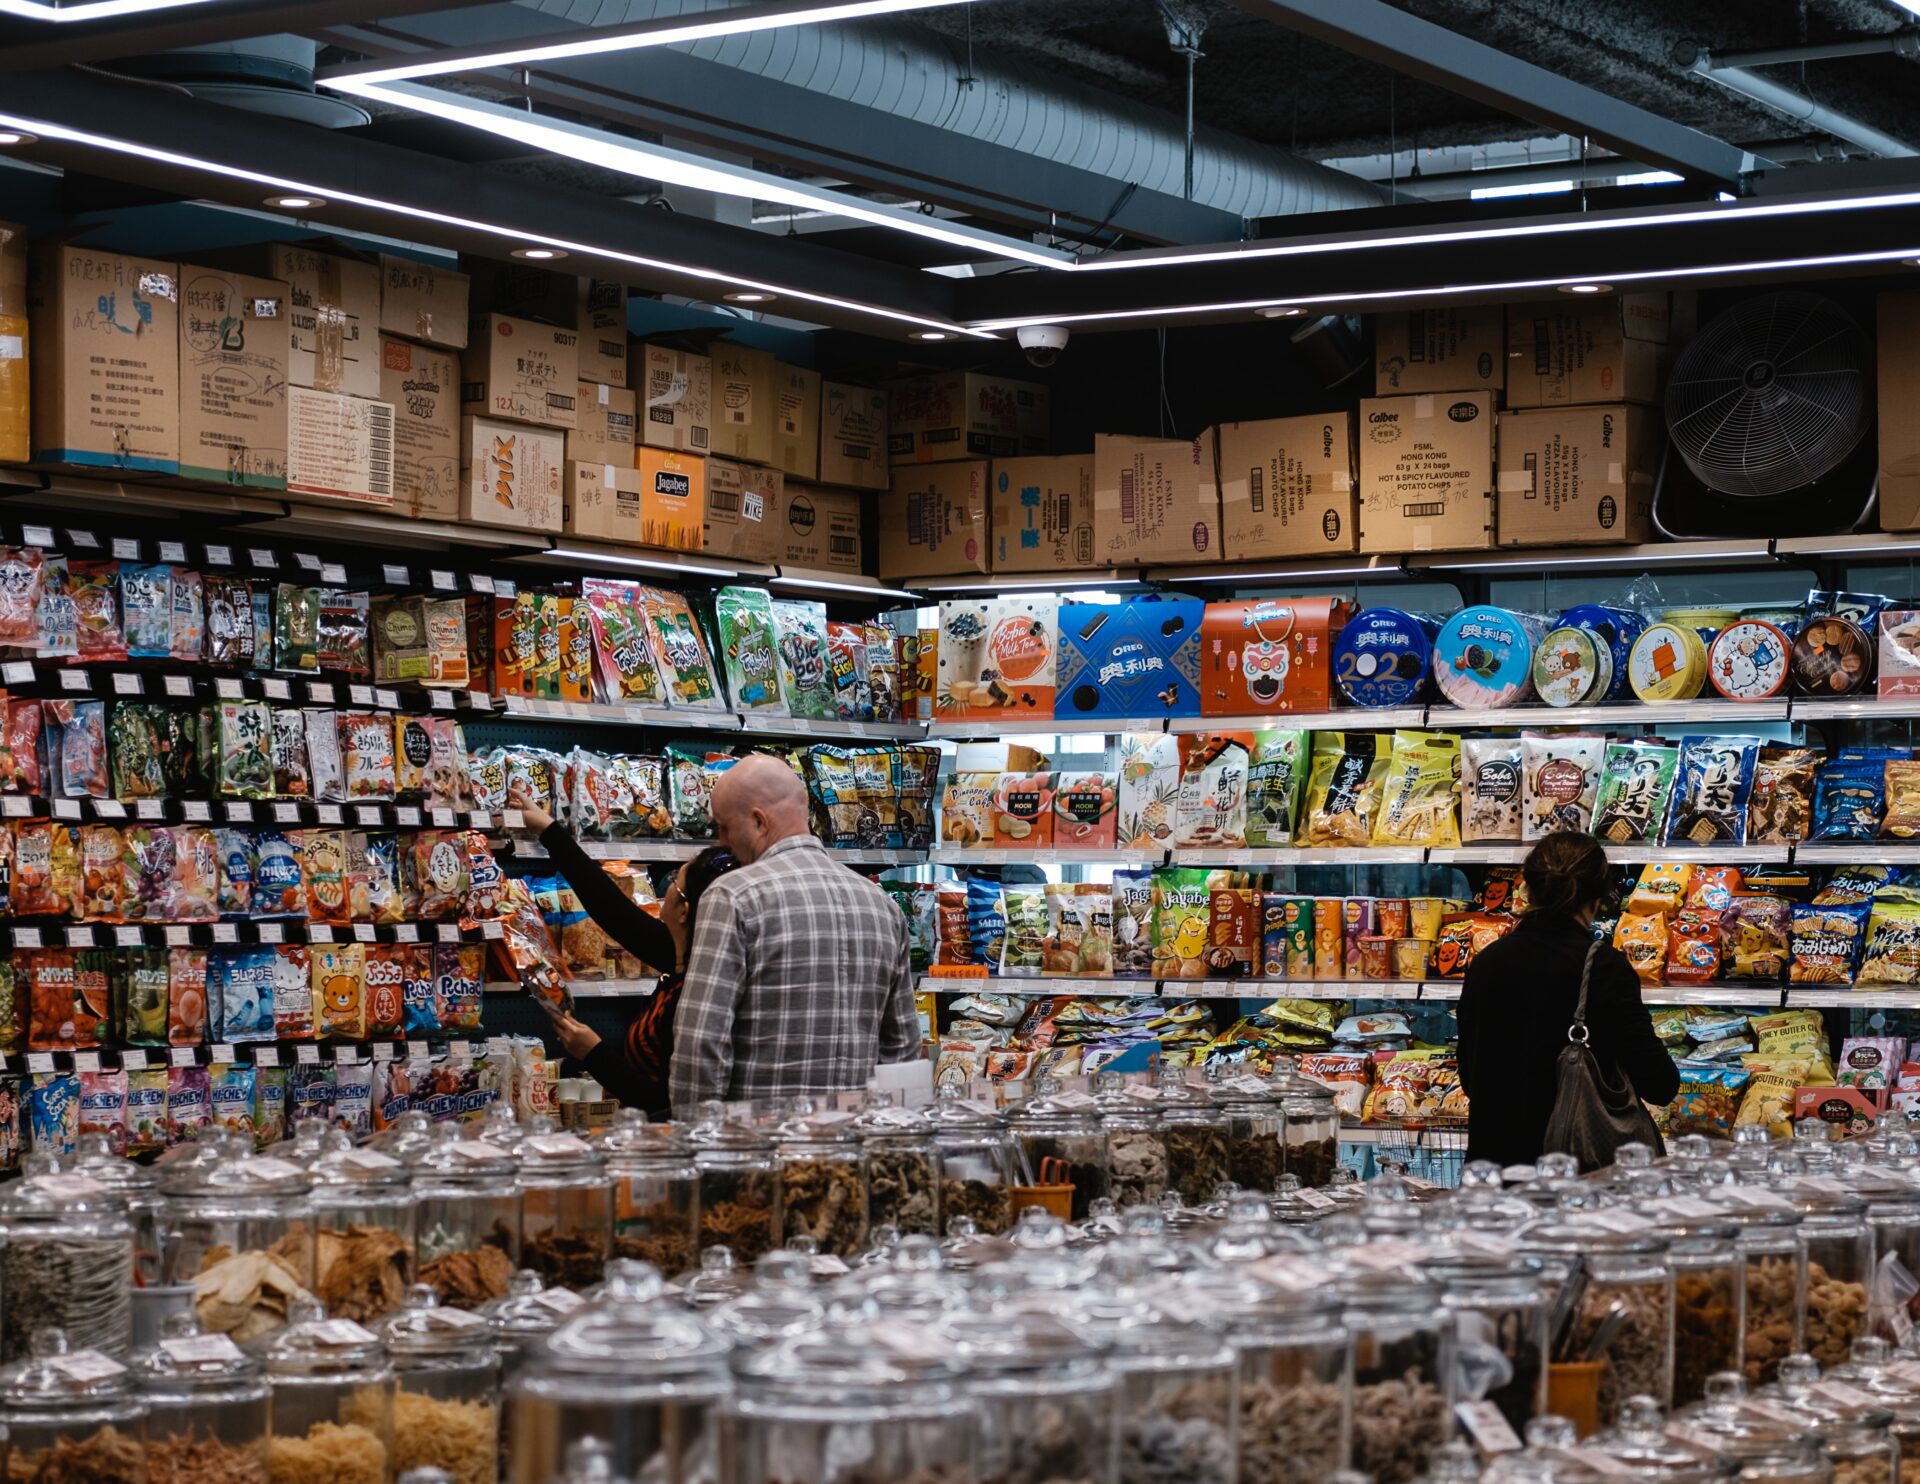 Żywność z naszych sklepów zabija? Fake news